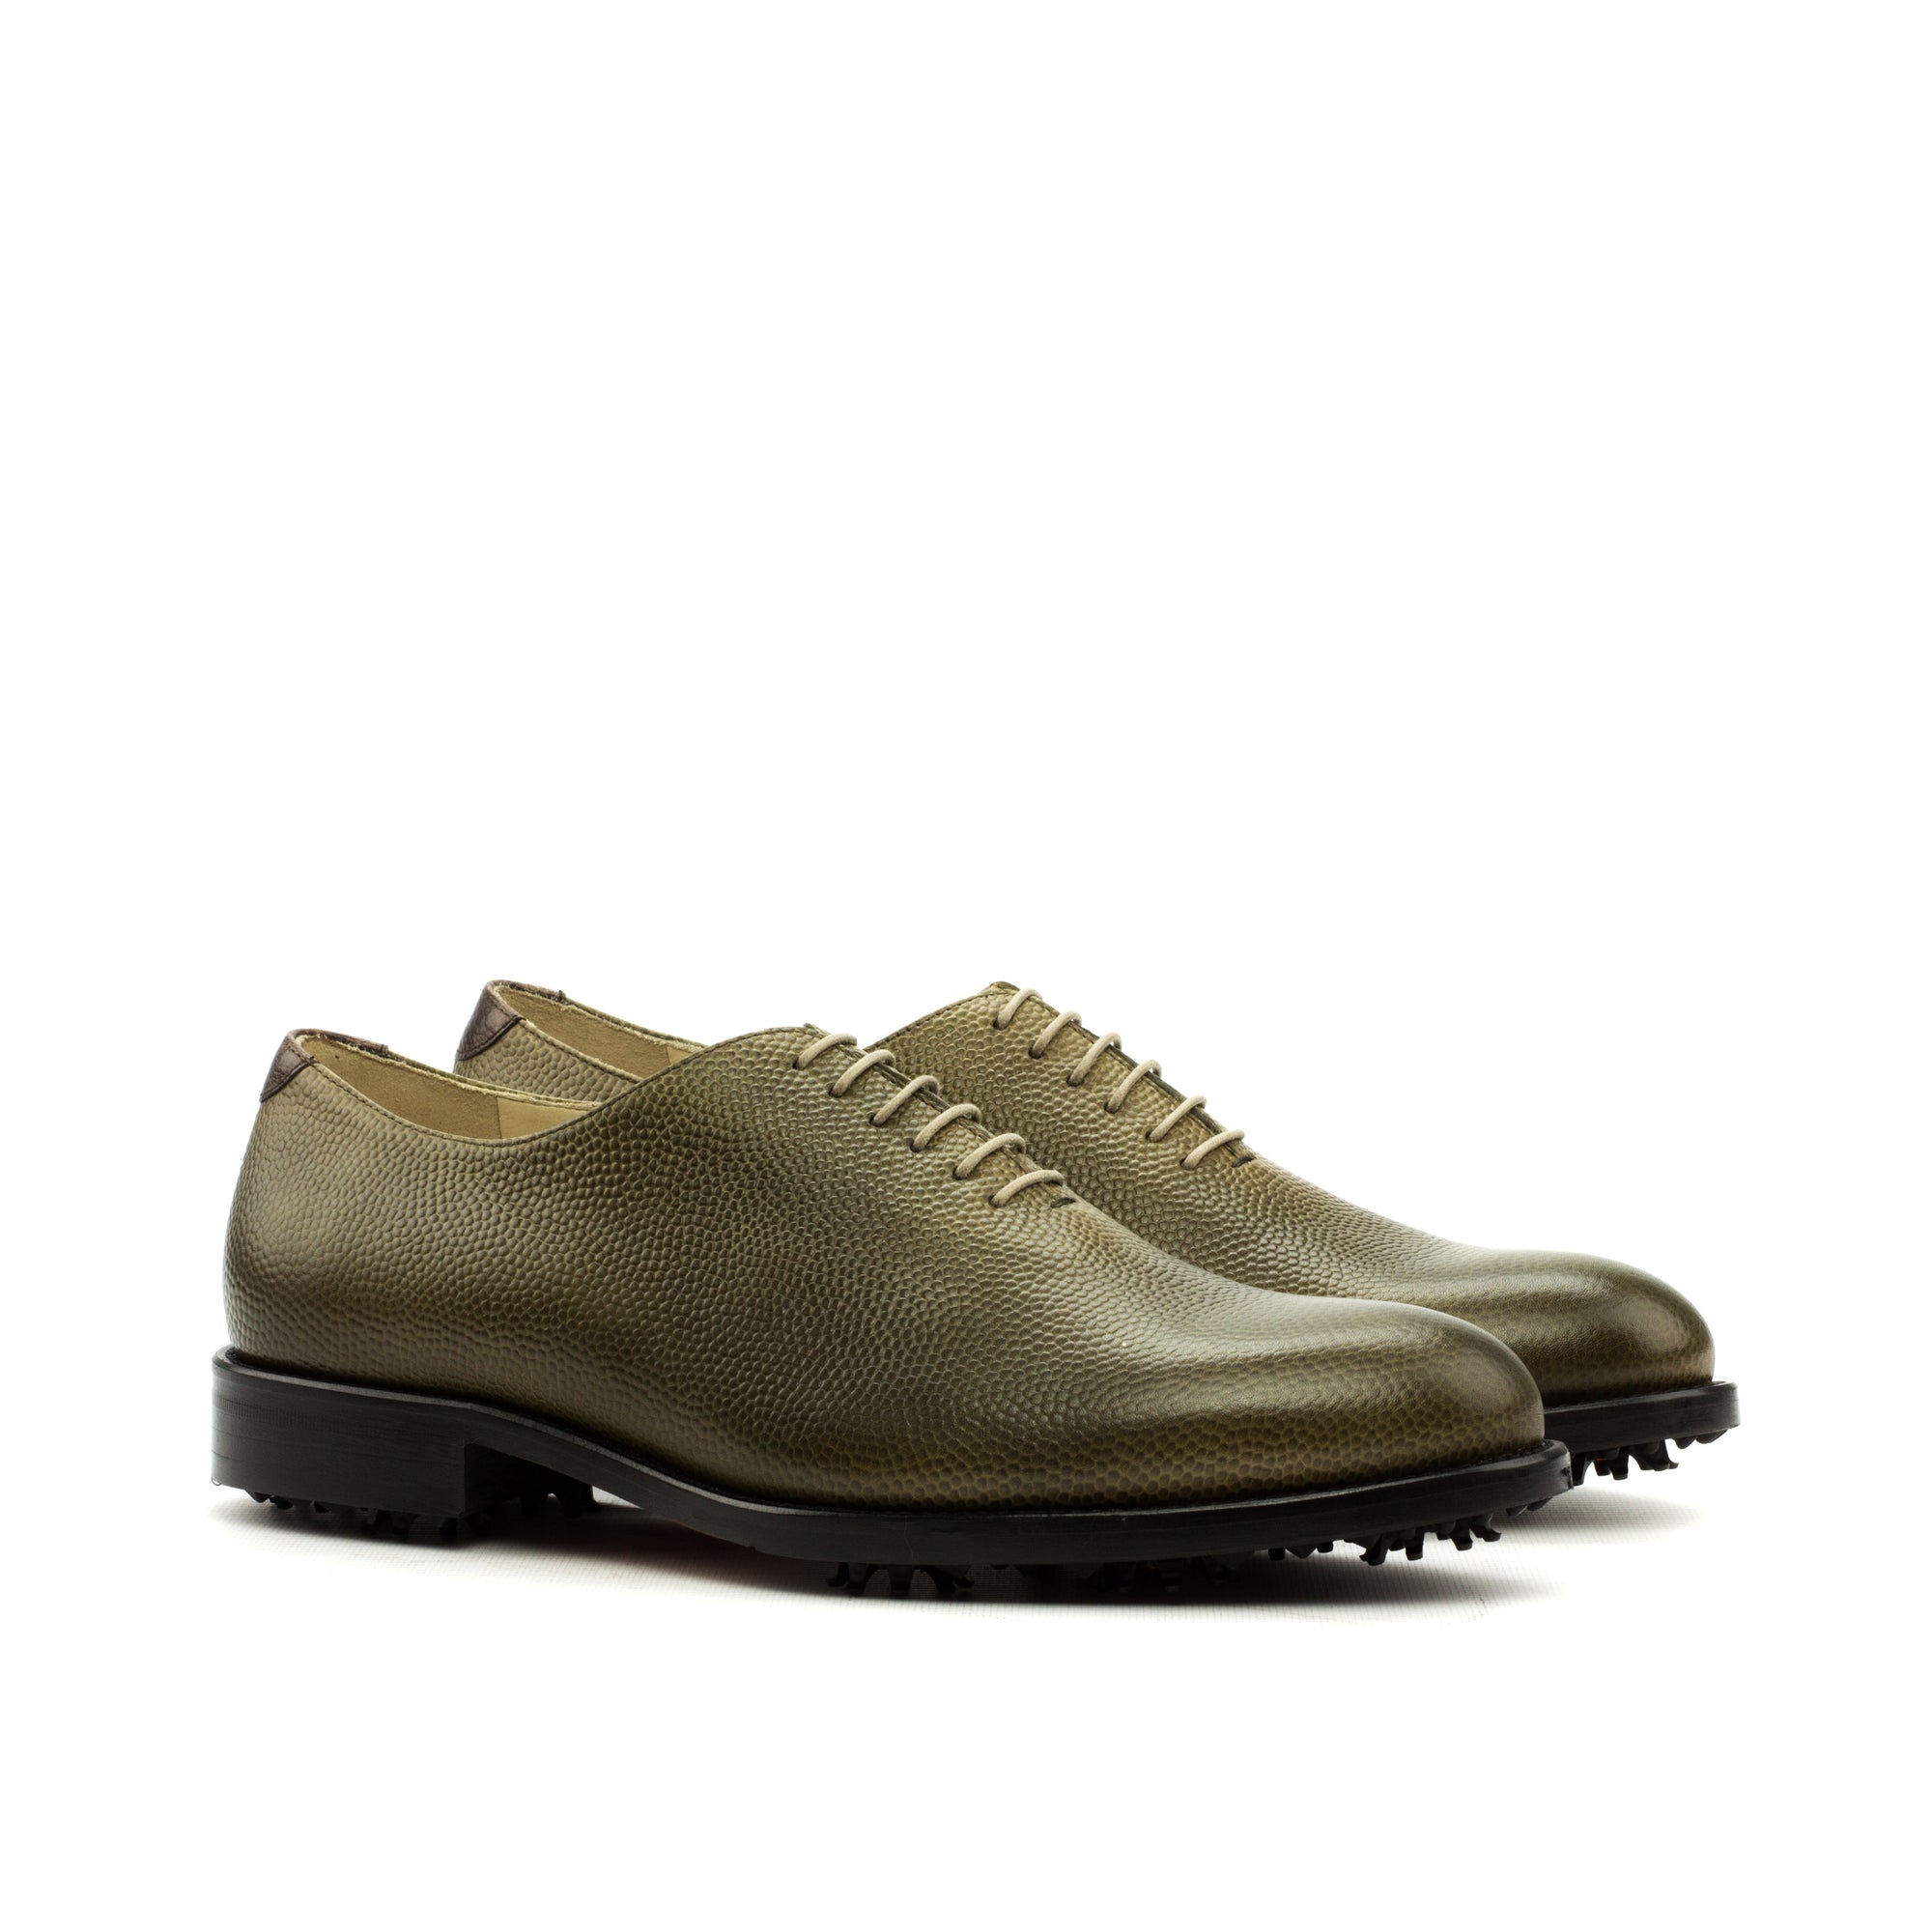 Chaussures de golf personnalisées - Jusqu'à la taille US 17 ! Chaussures de golf personnalisées vert galet à coupe entière